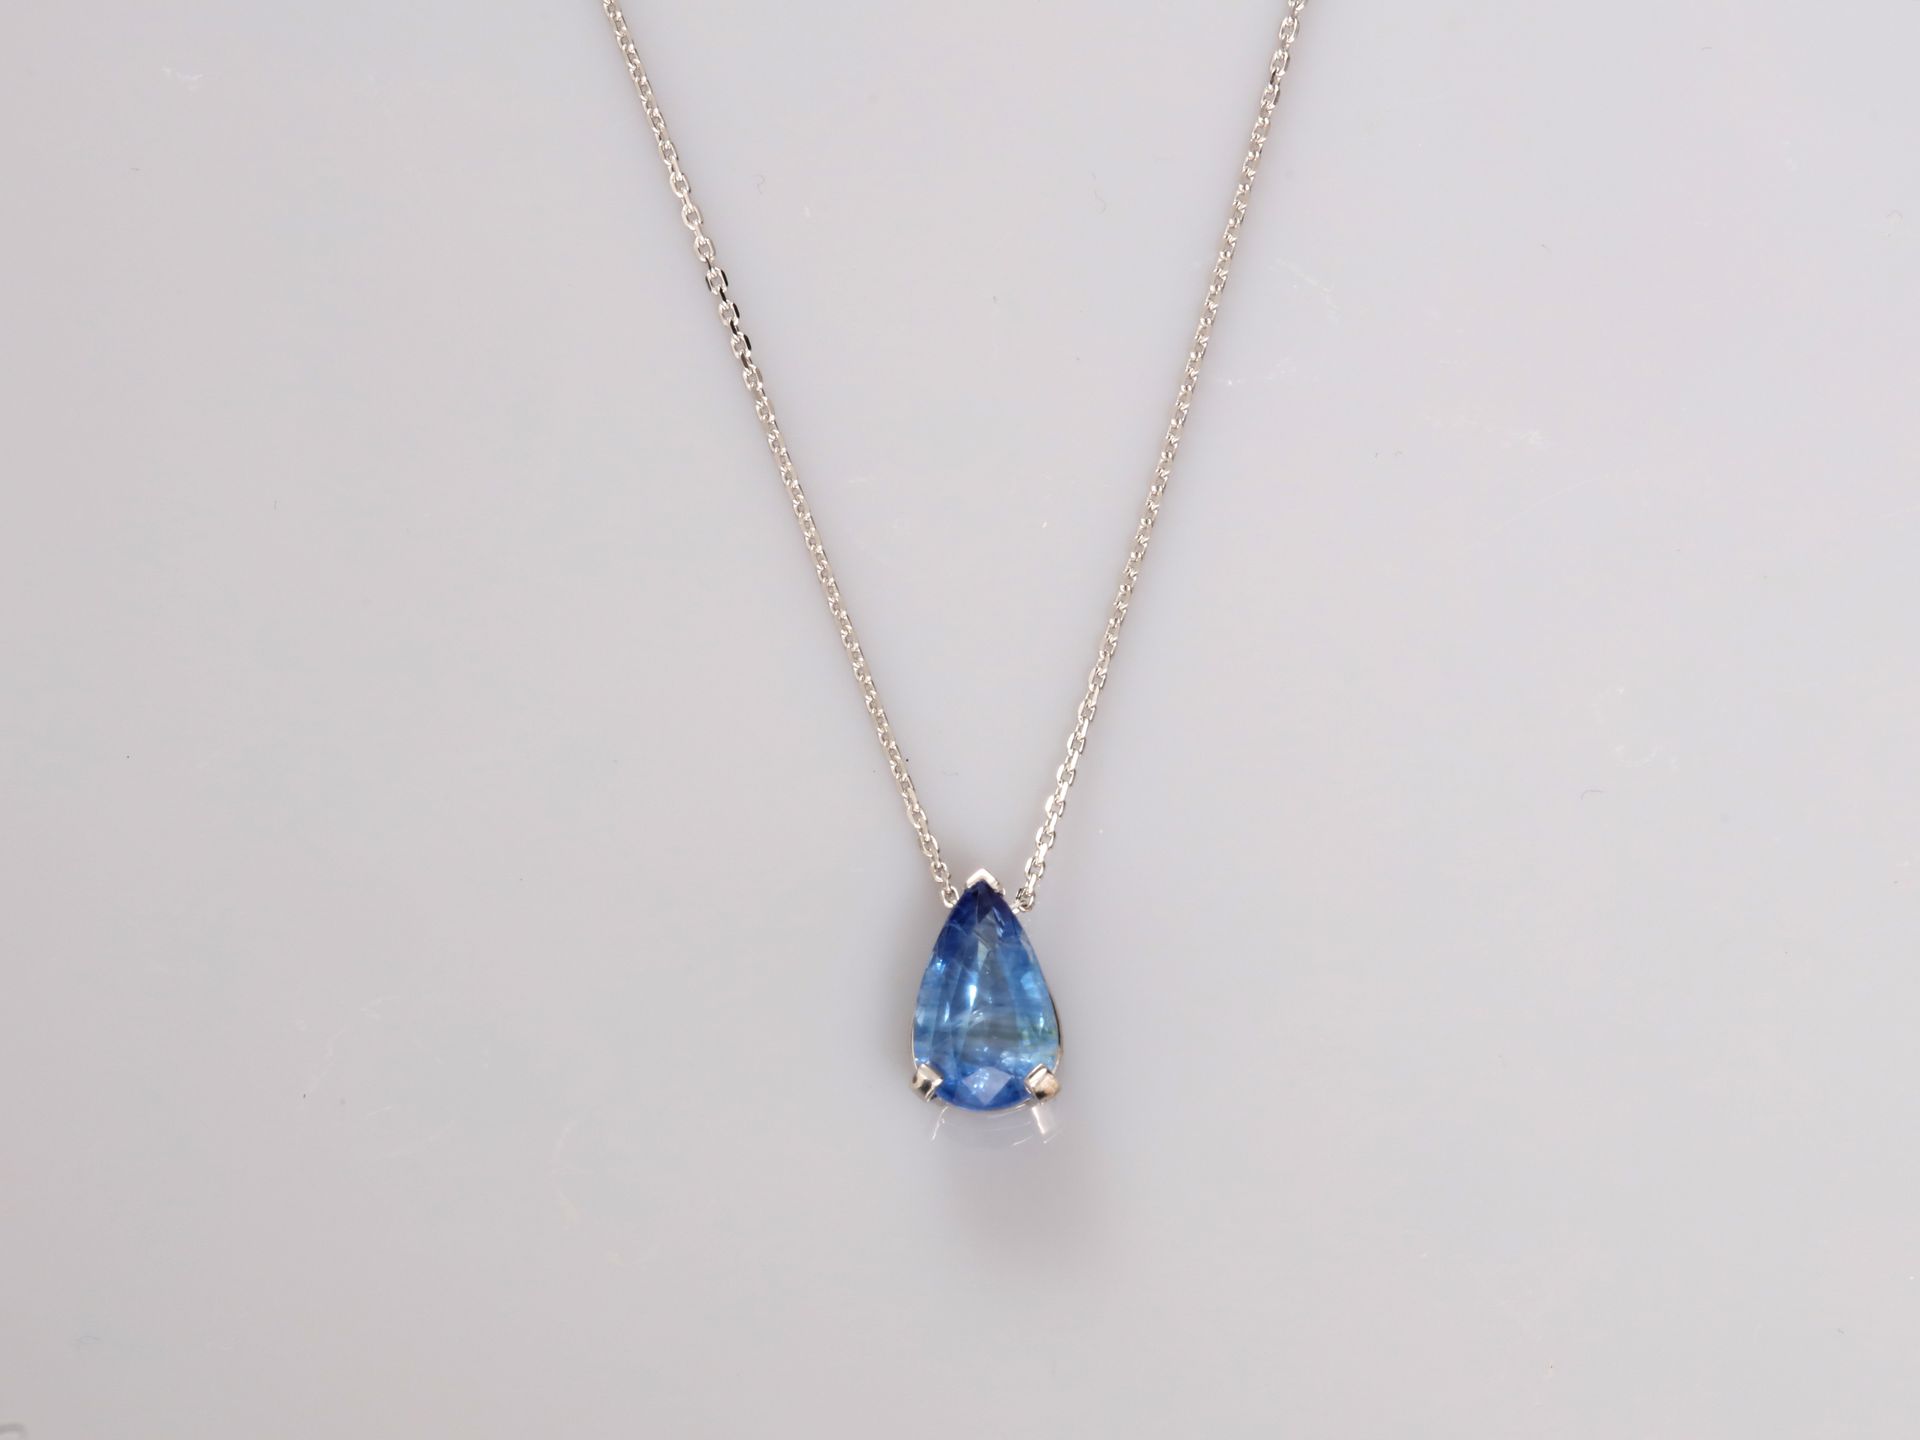 Null 白金项链，750毫米，中心为一颗梨形切割蓝宝石，重2.84克拉，产地锡兰，长42厘米，重量：毛重3.2克。